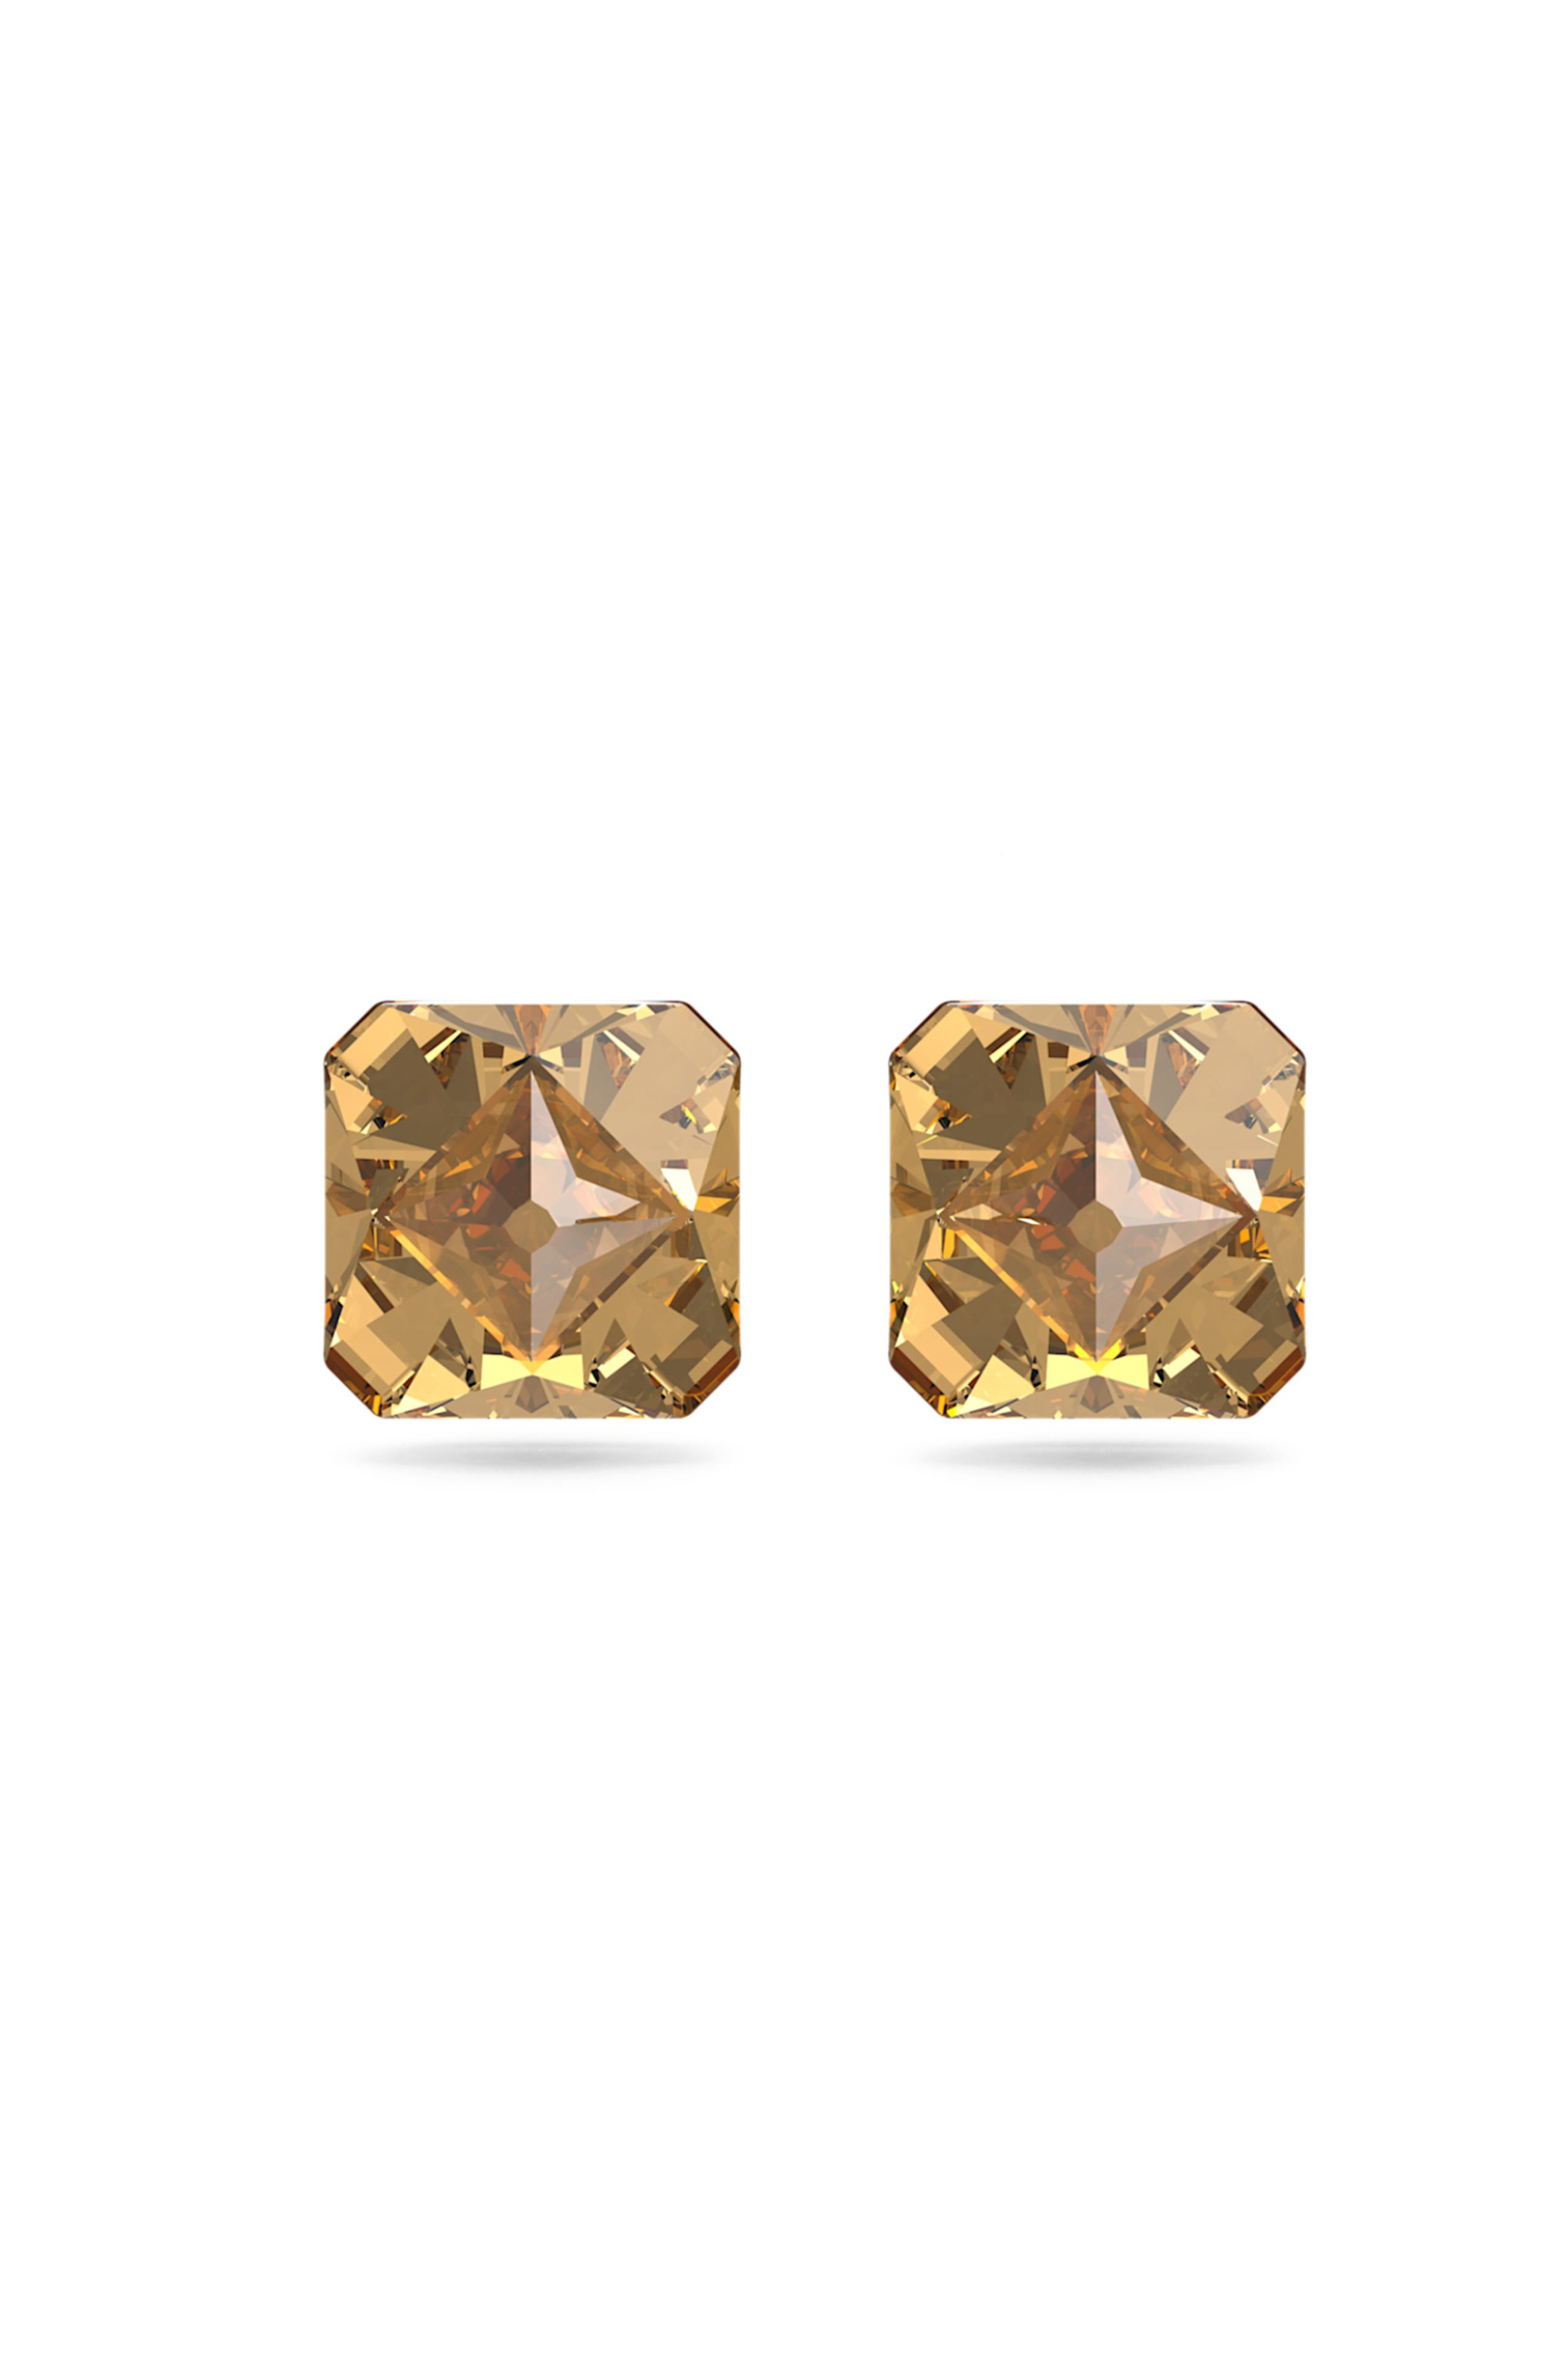 Γυναίκα > ΑΞΕΣΟΥΑΡ > Κοσμήματα > Σκουλαρίκια Swarovski Chroma Stud Earrings Pyramid Cut Crystals, Yellow, Gold-Tone Plated - 5613680